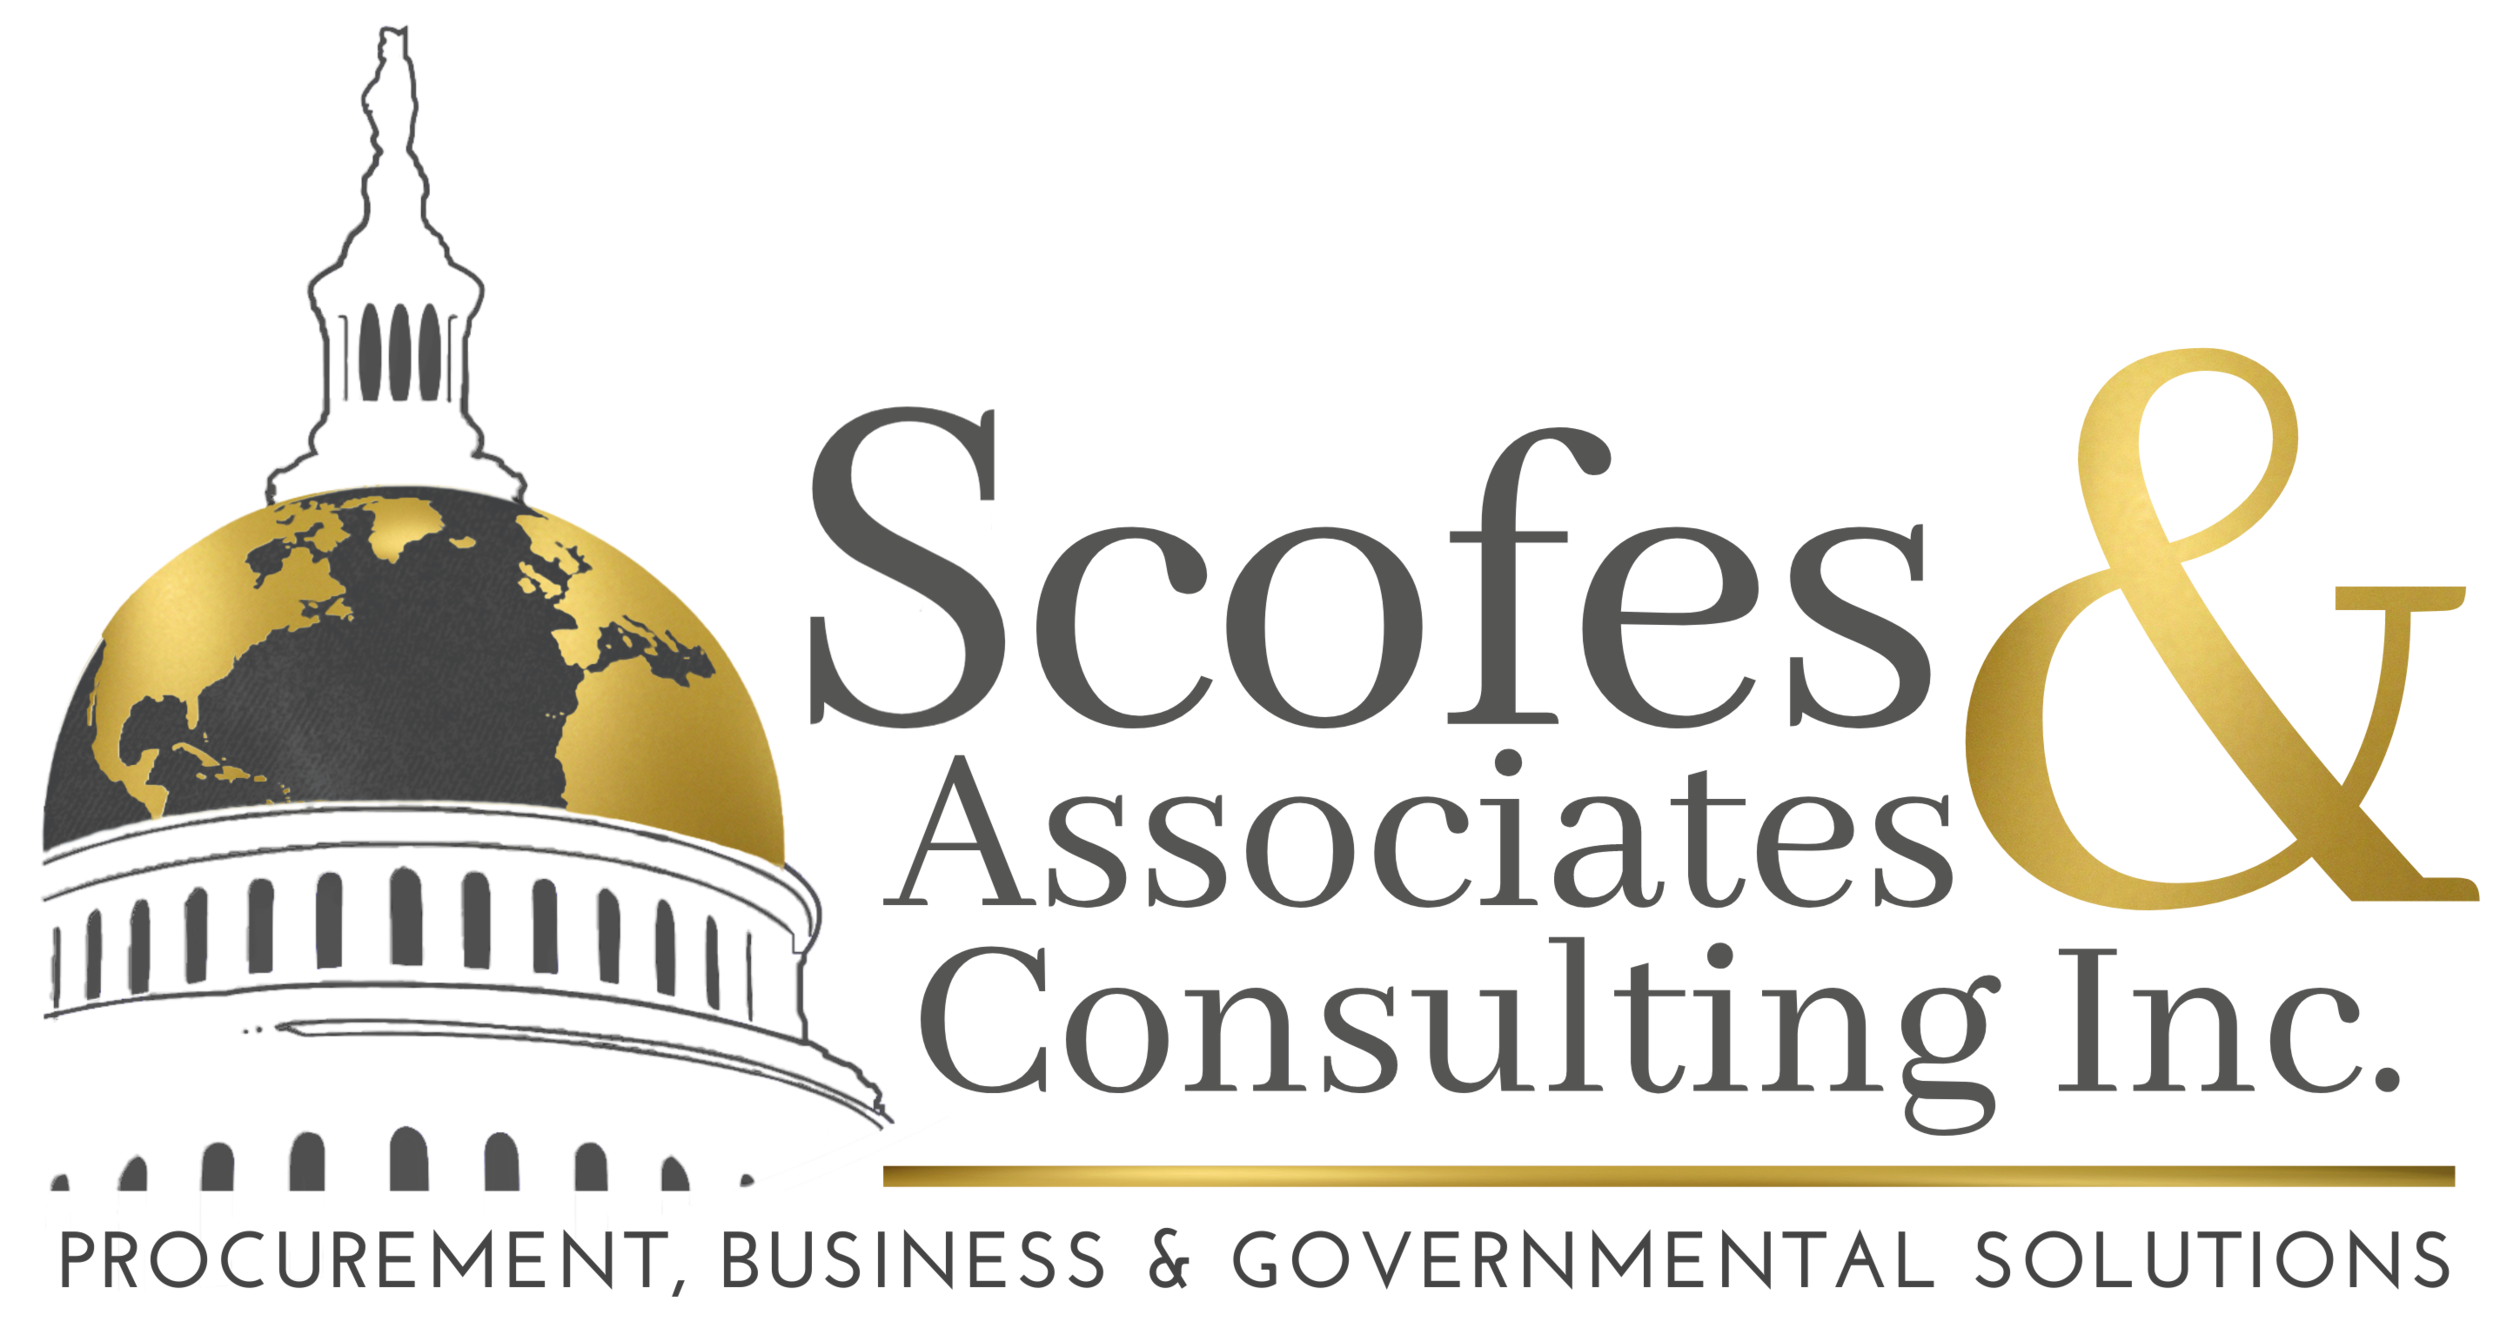 Scofes &amp; Associates Consulting